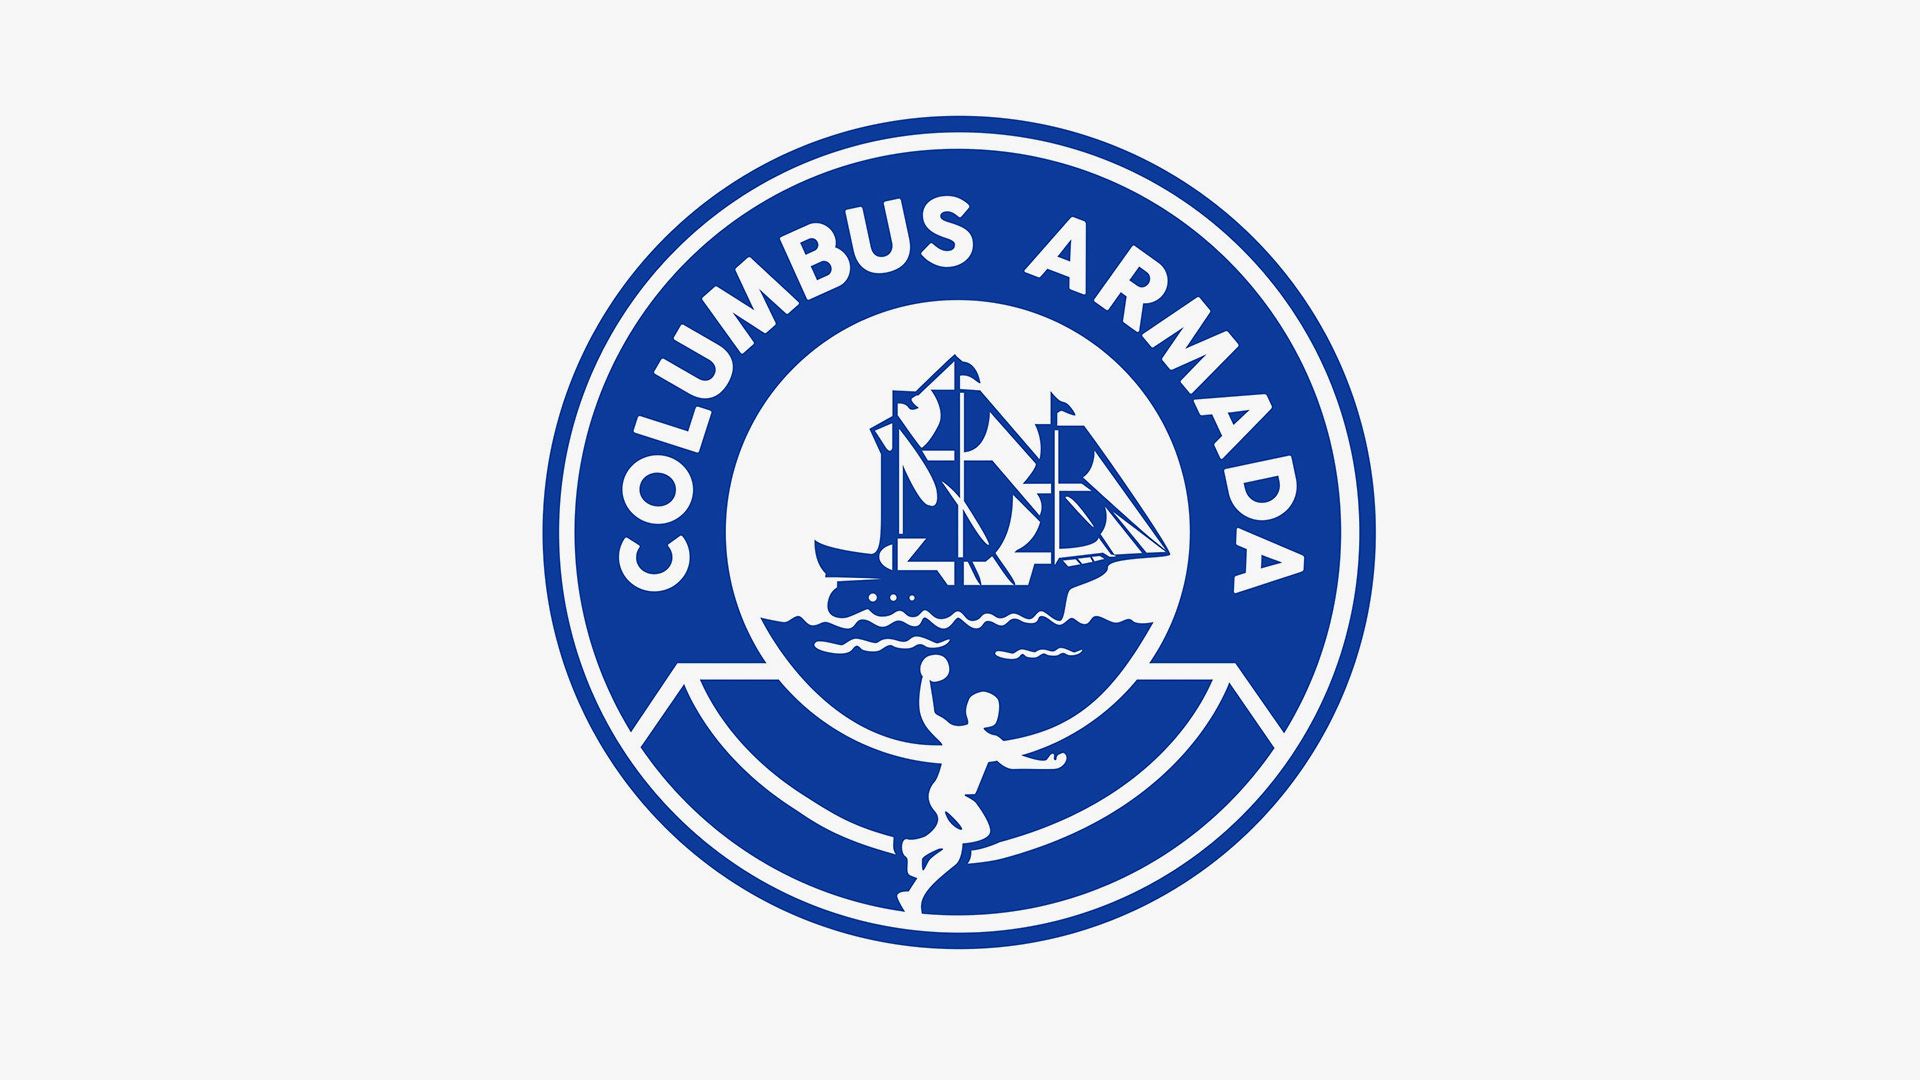 Le logo du club de handball Columbus Armada, avec un navire et le contour d'un joueur lançant une balle.